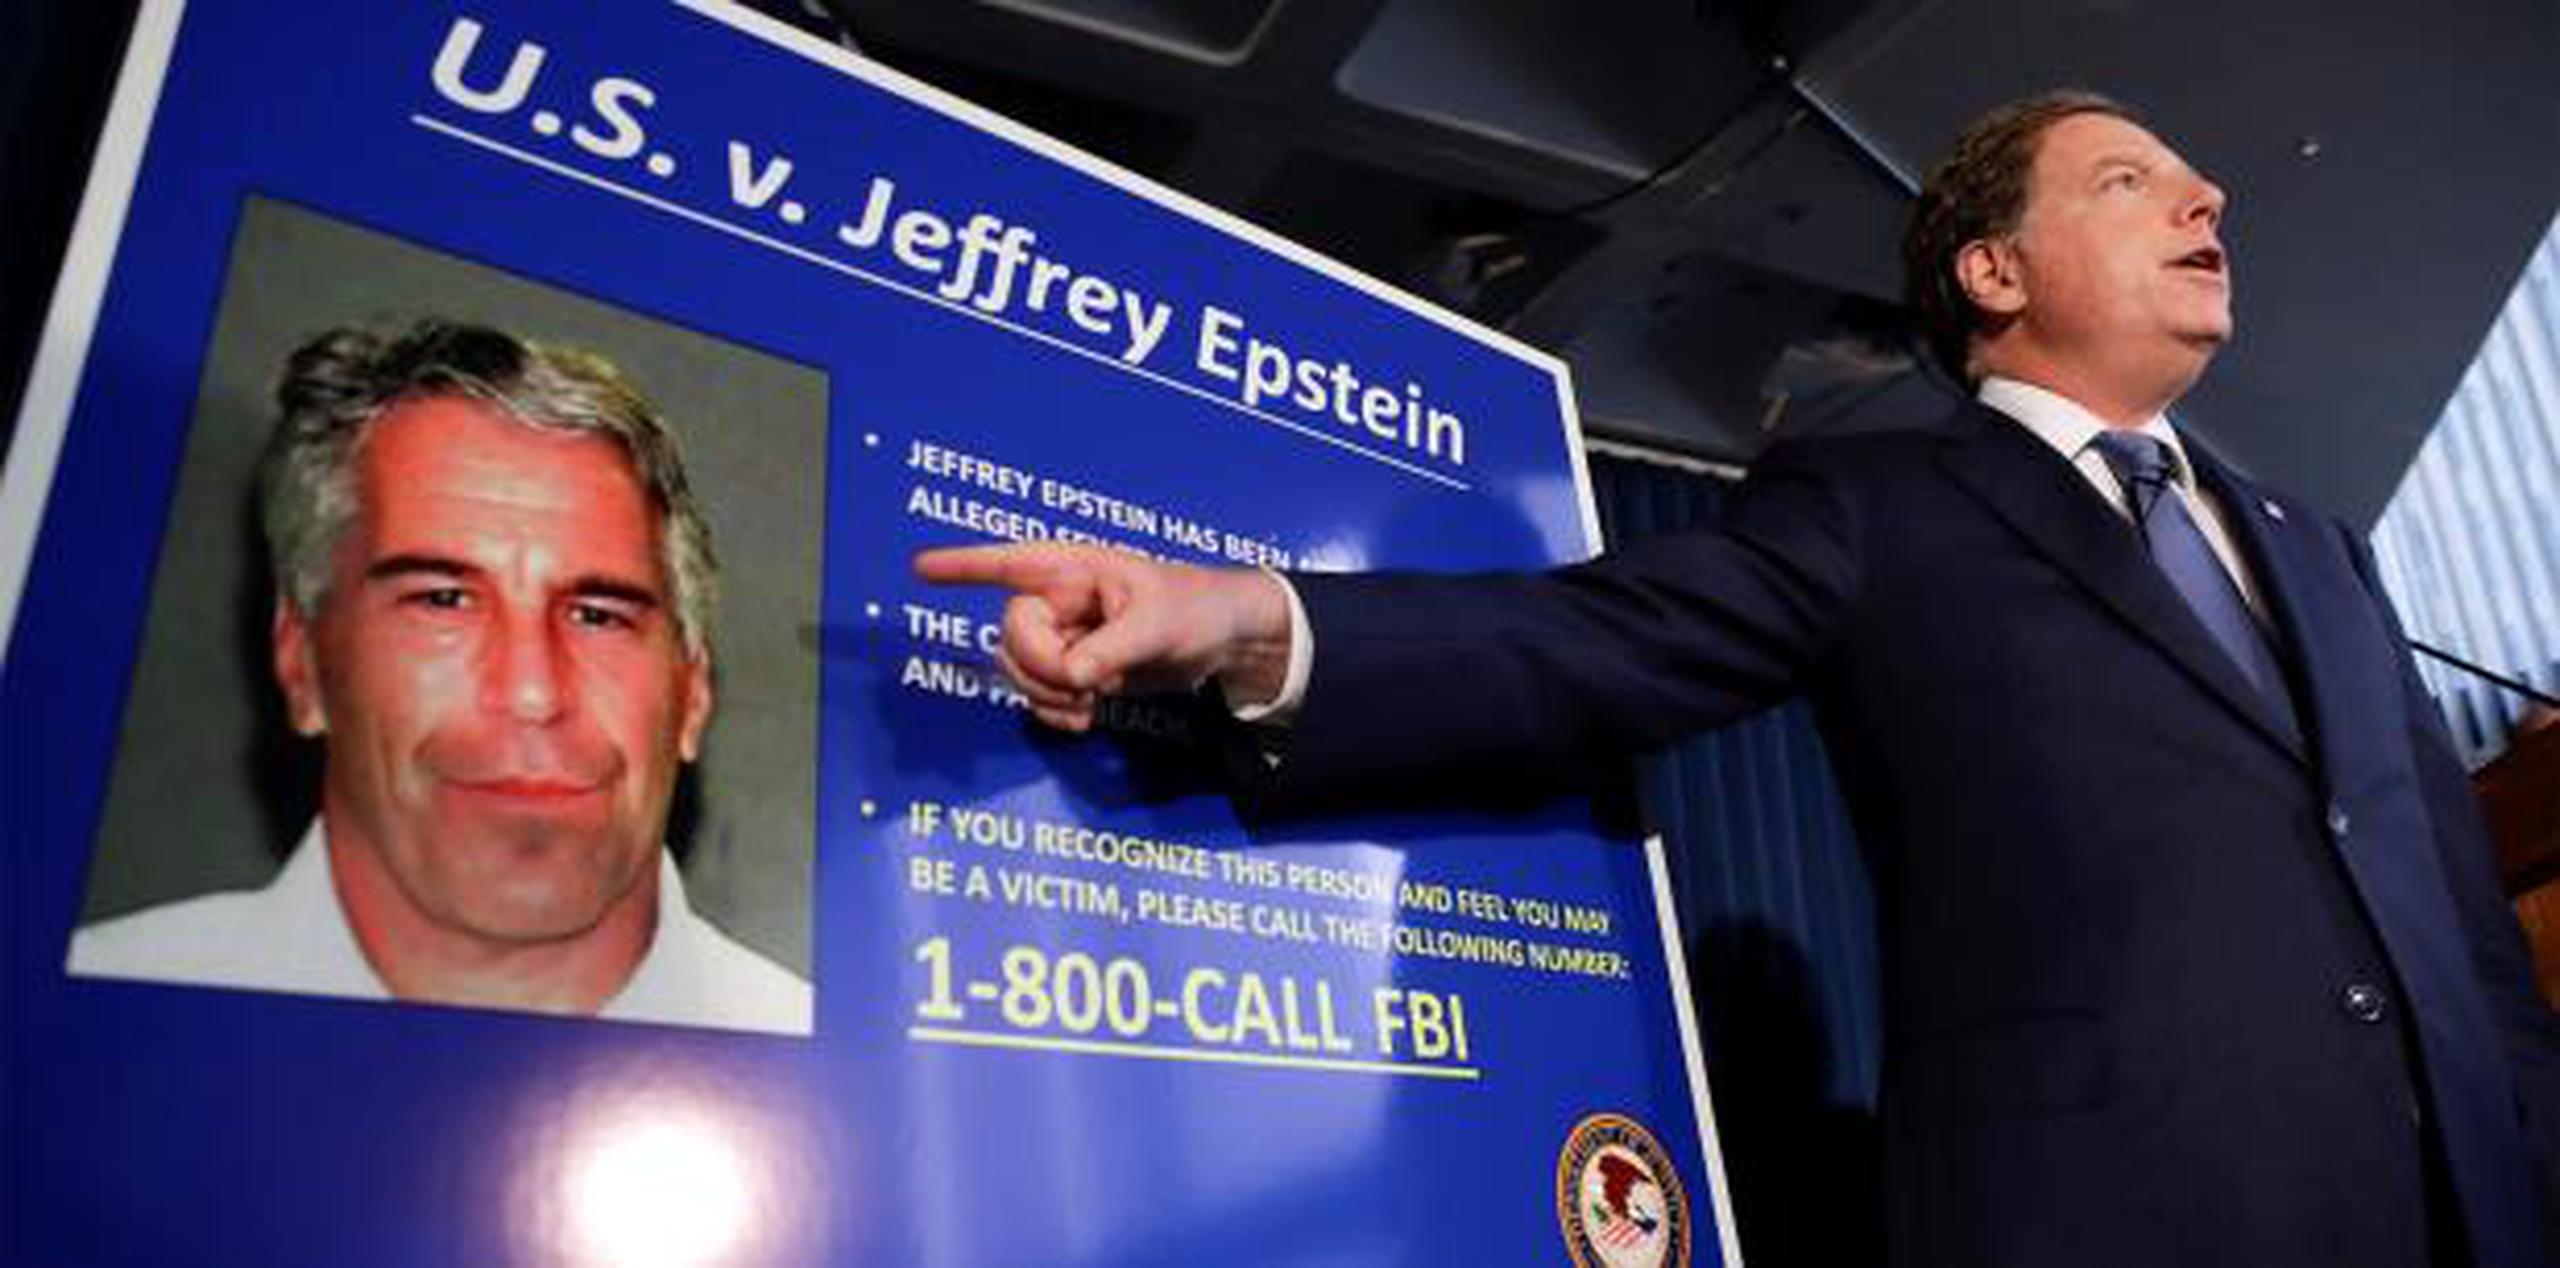 Epstein está acusado de abuso sexual de niñas, algunas incluso de 14 años. Se ha declarado inocente de los cargos. (AP)

